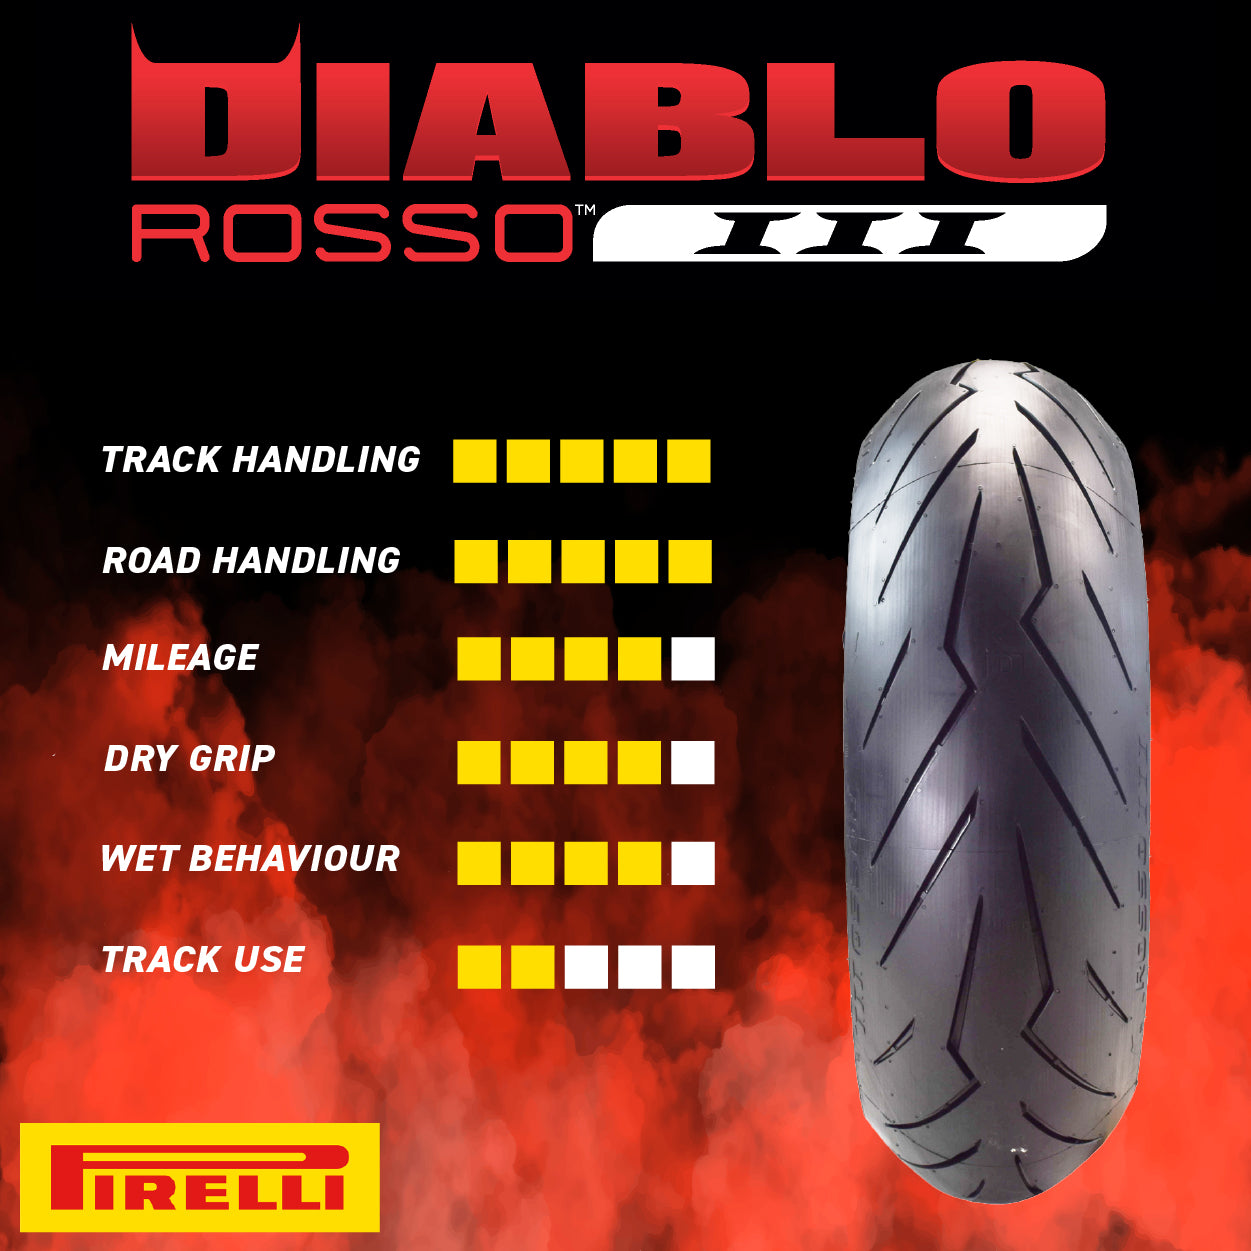 Pirelli 871-1151 Single Diablo Rosso III 110/70ZR17 54W Front Motorcycle Tire